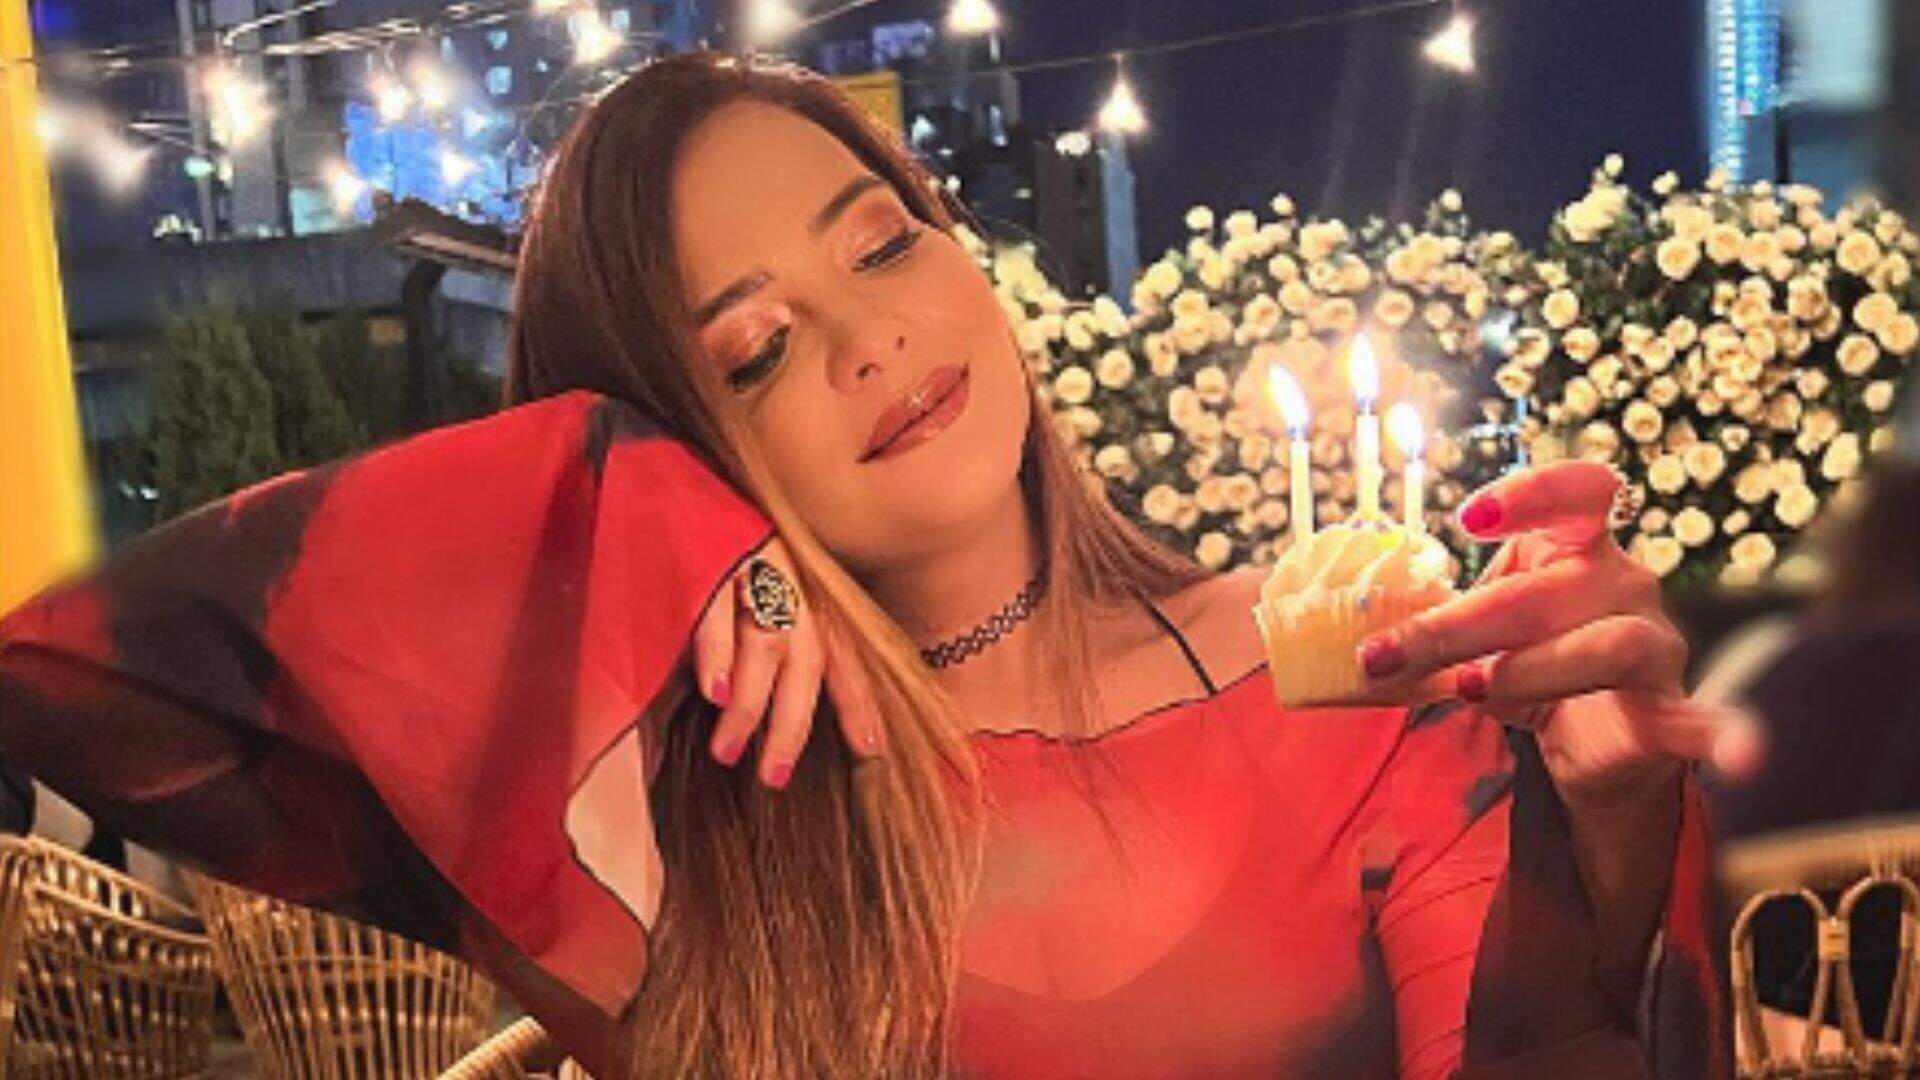 Geisy Arruda comemora aniversário com clique ao lado de estátua de Anitta: “Musas” - Metropolitana FM